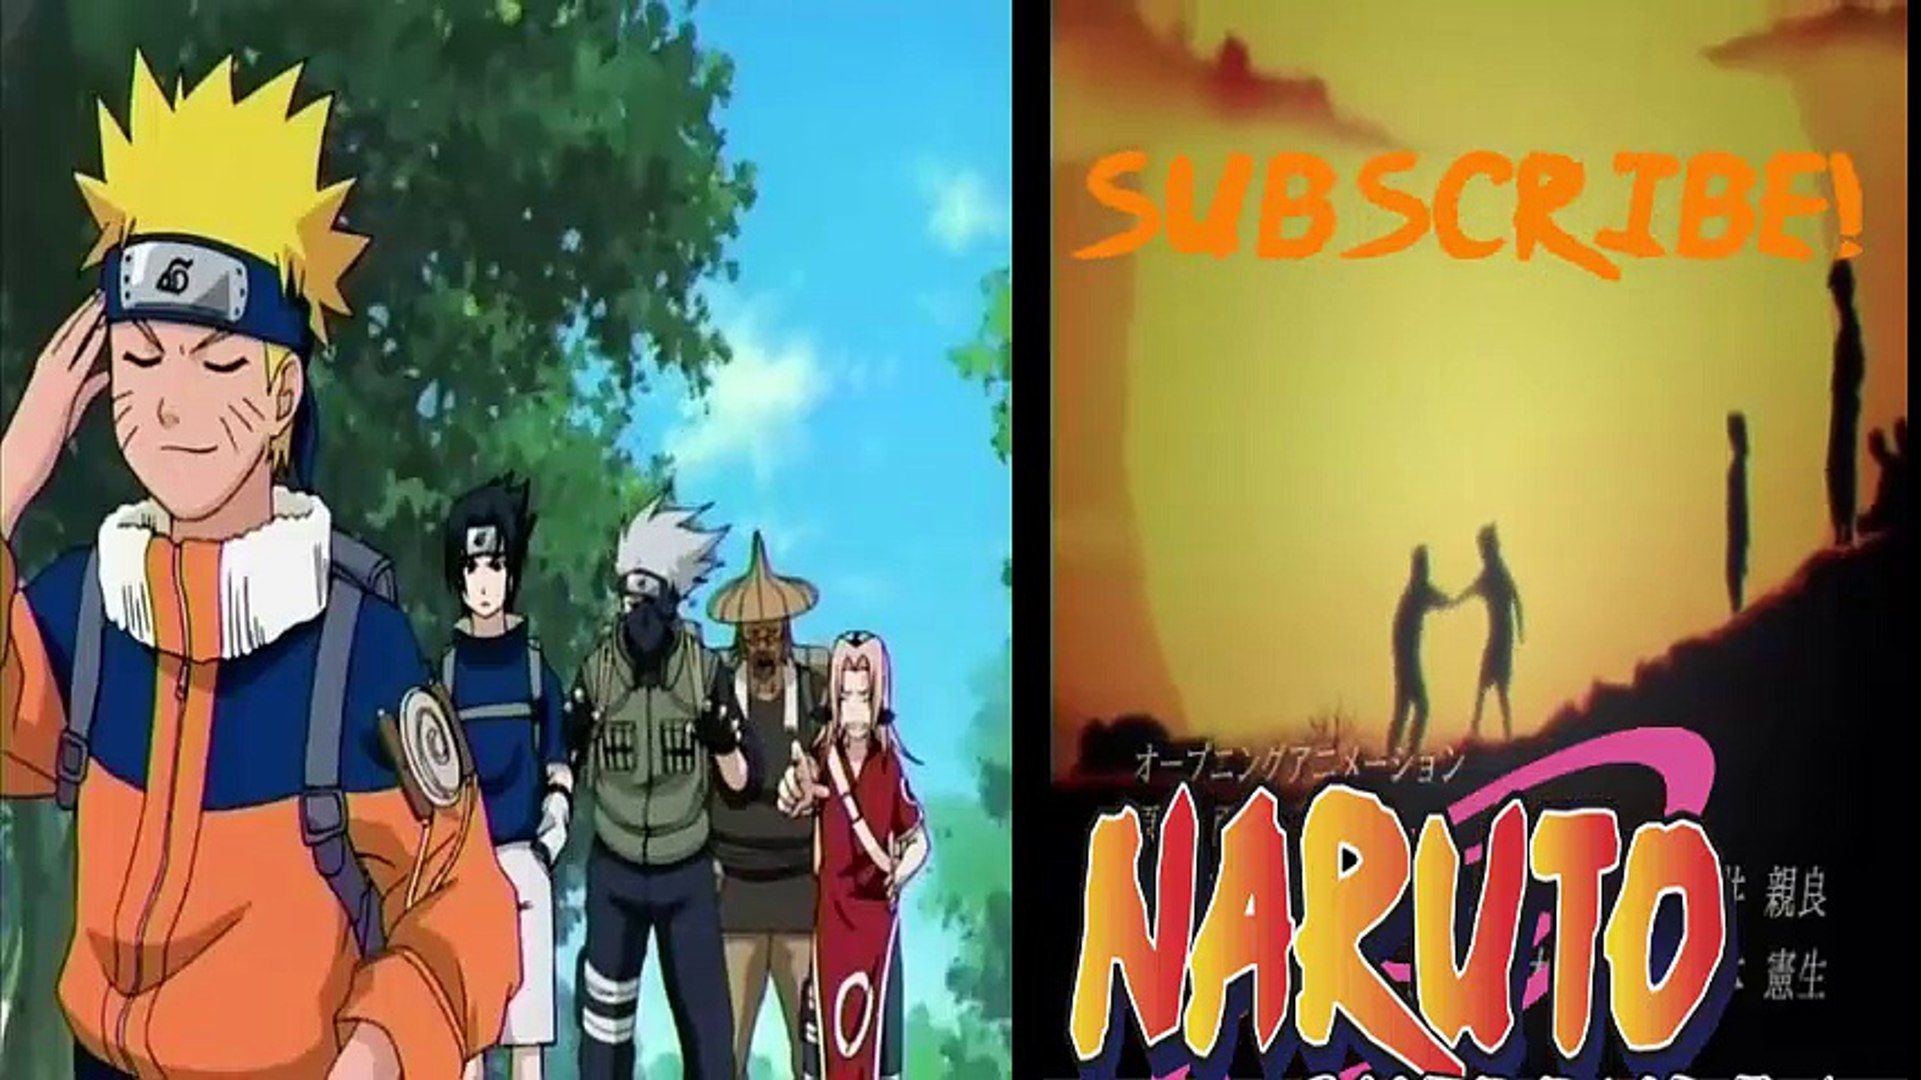 Naruto (Latino) - Capitulo 7, Naruto (Latino) - Capitulo 7